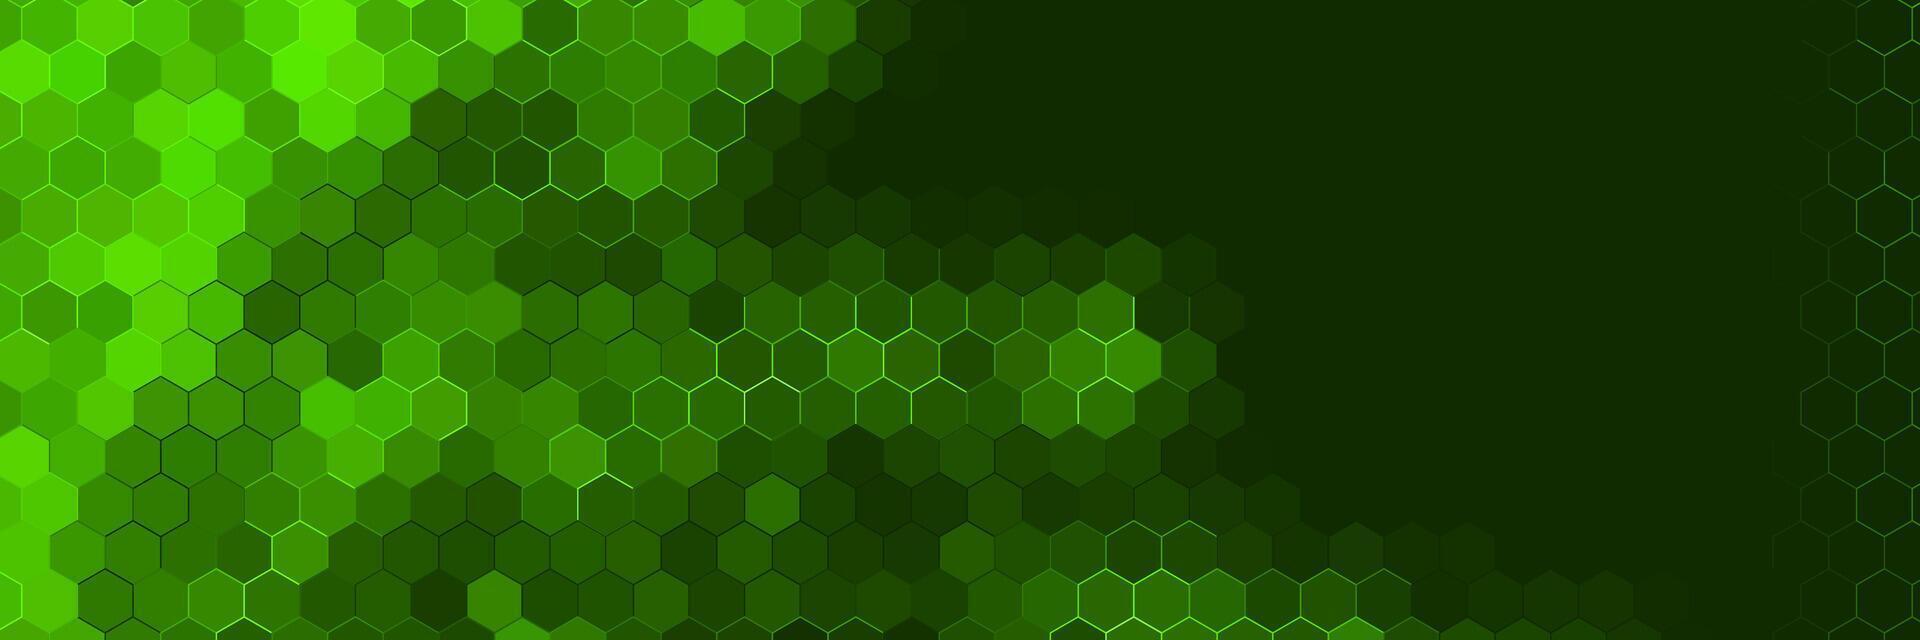 donker groen futuristische technologie achtergrond met kleurrijk hex patroon vector